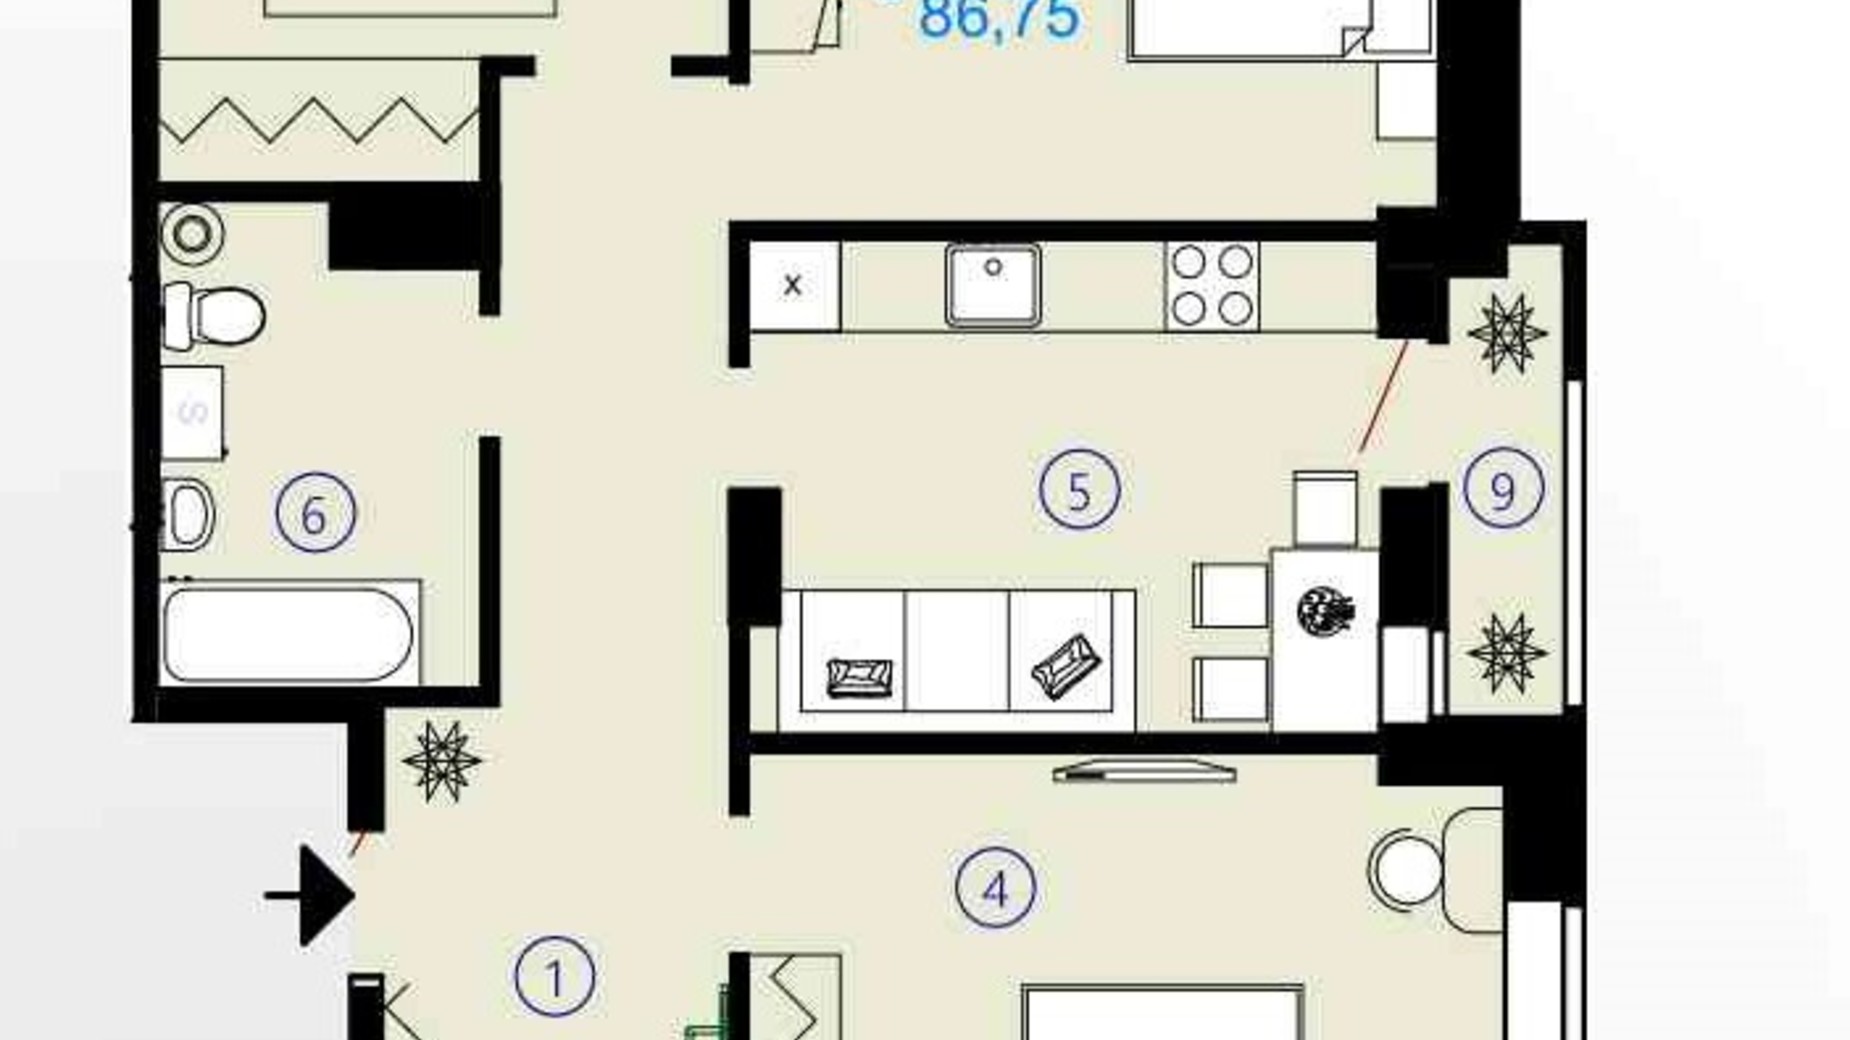 Планировка 3-комнатной квартиры в ЖК Меридиан 86.75 м², фото 294203